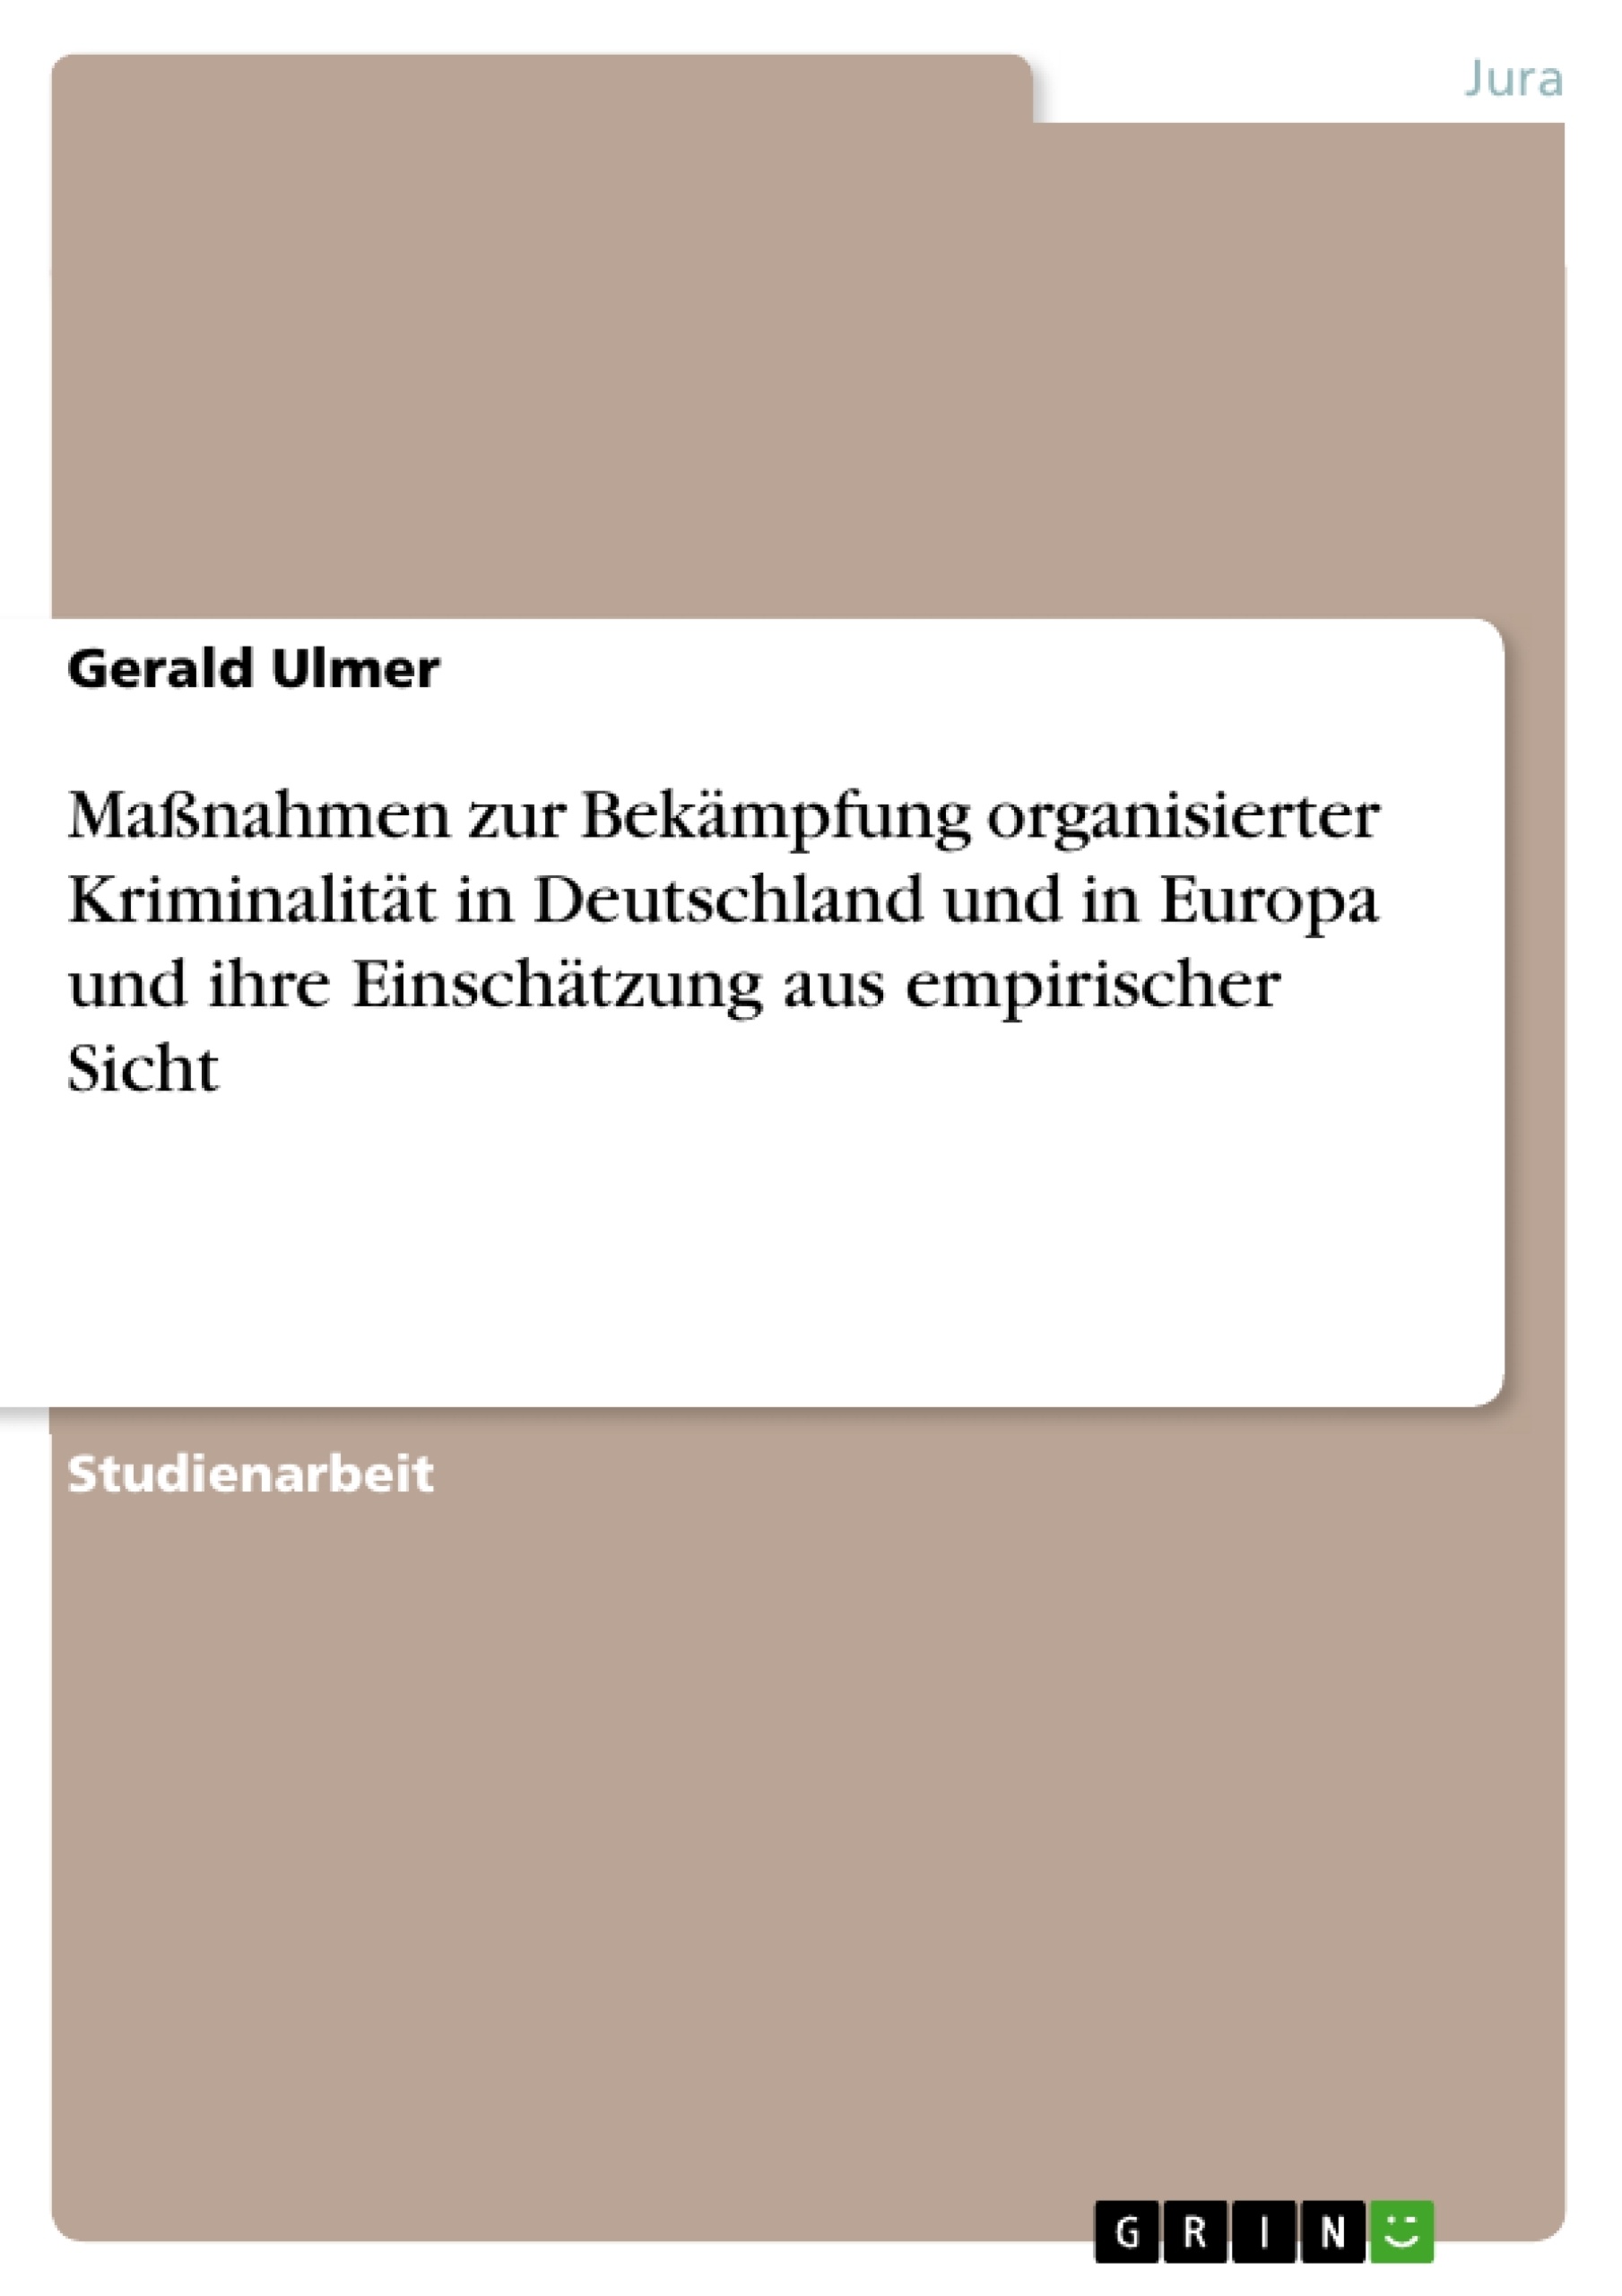 Título: Maßnahmen zur Bekämpfung organisierter Kriminalität in Deutschland und in Europa und ihre Einschätzung aus empirischer Sicht